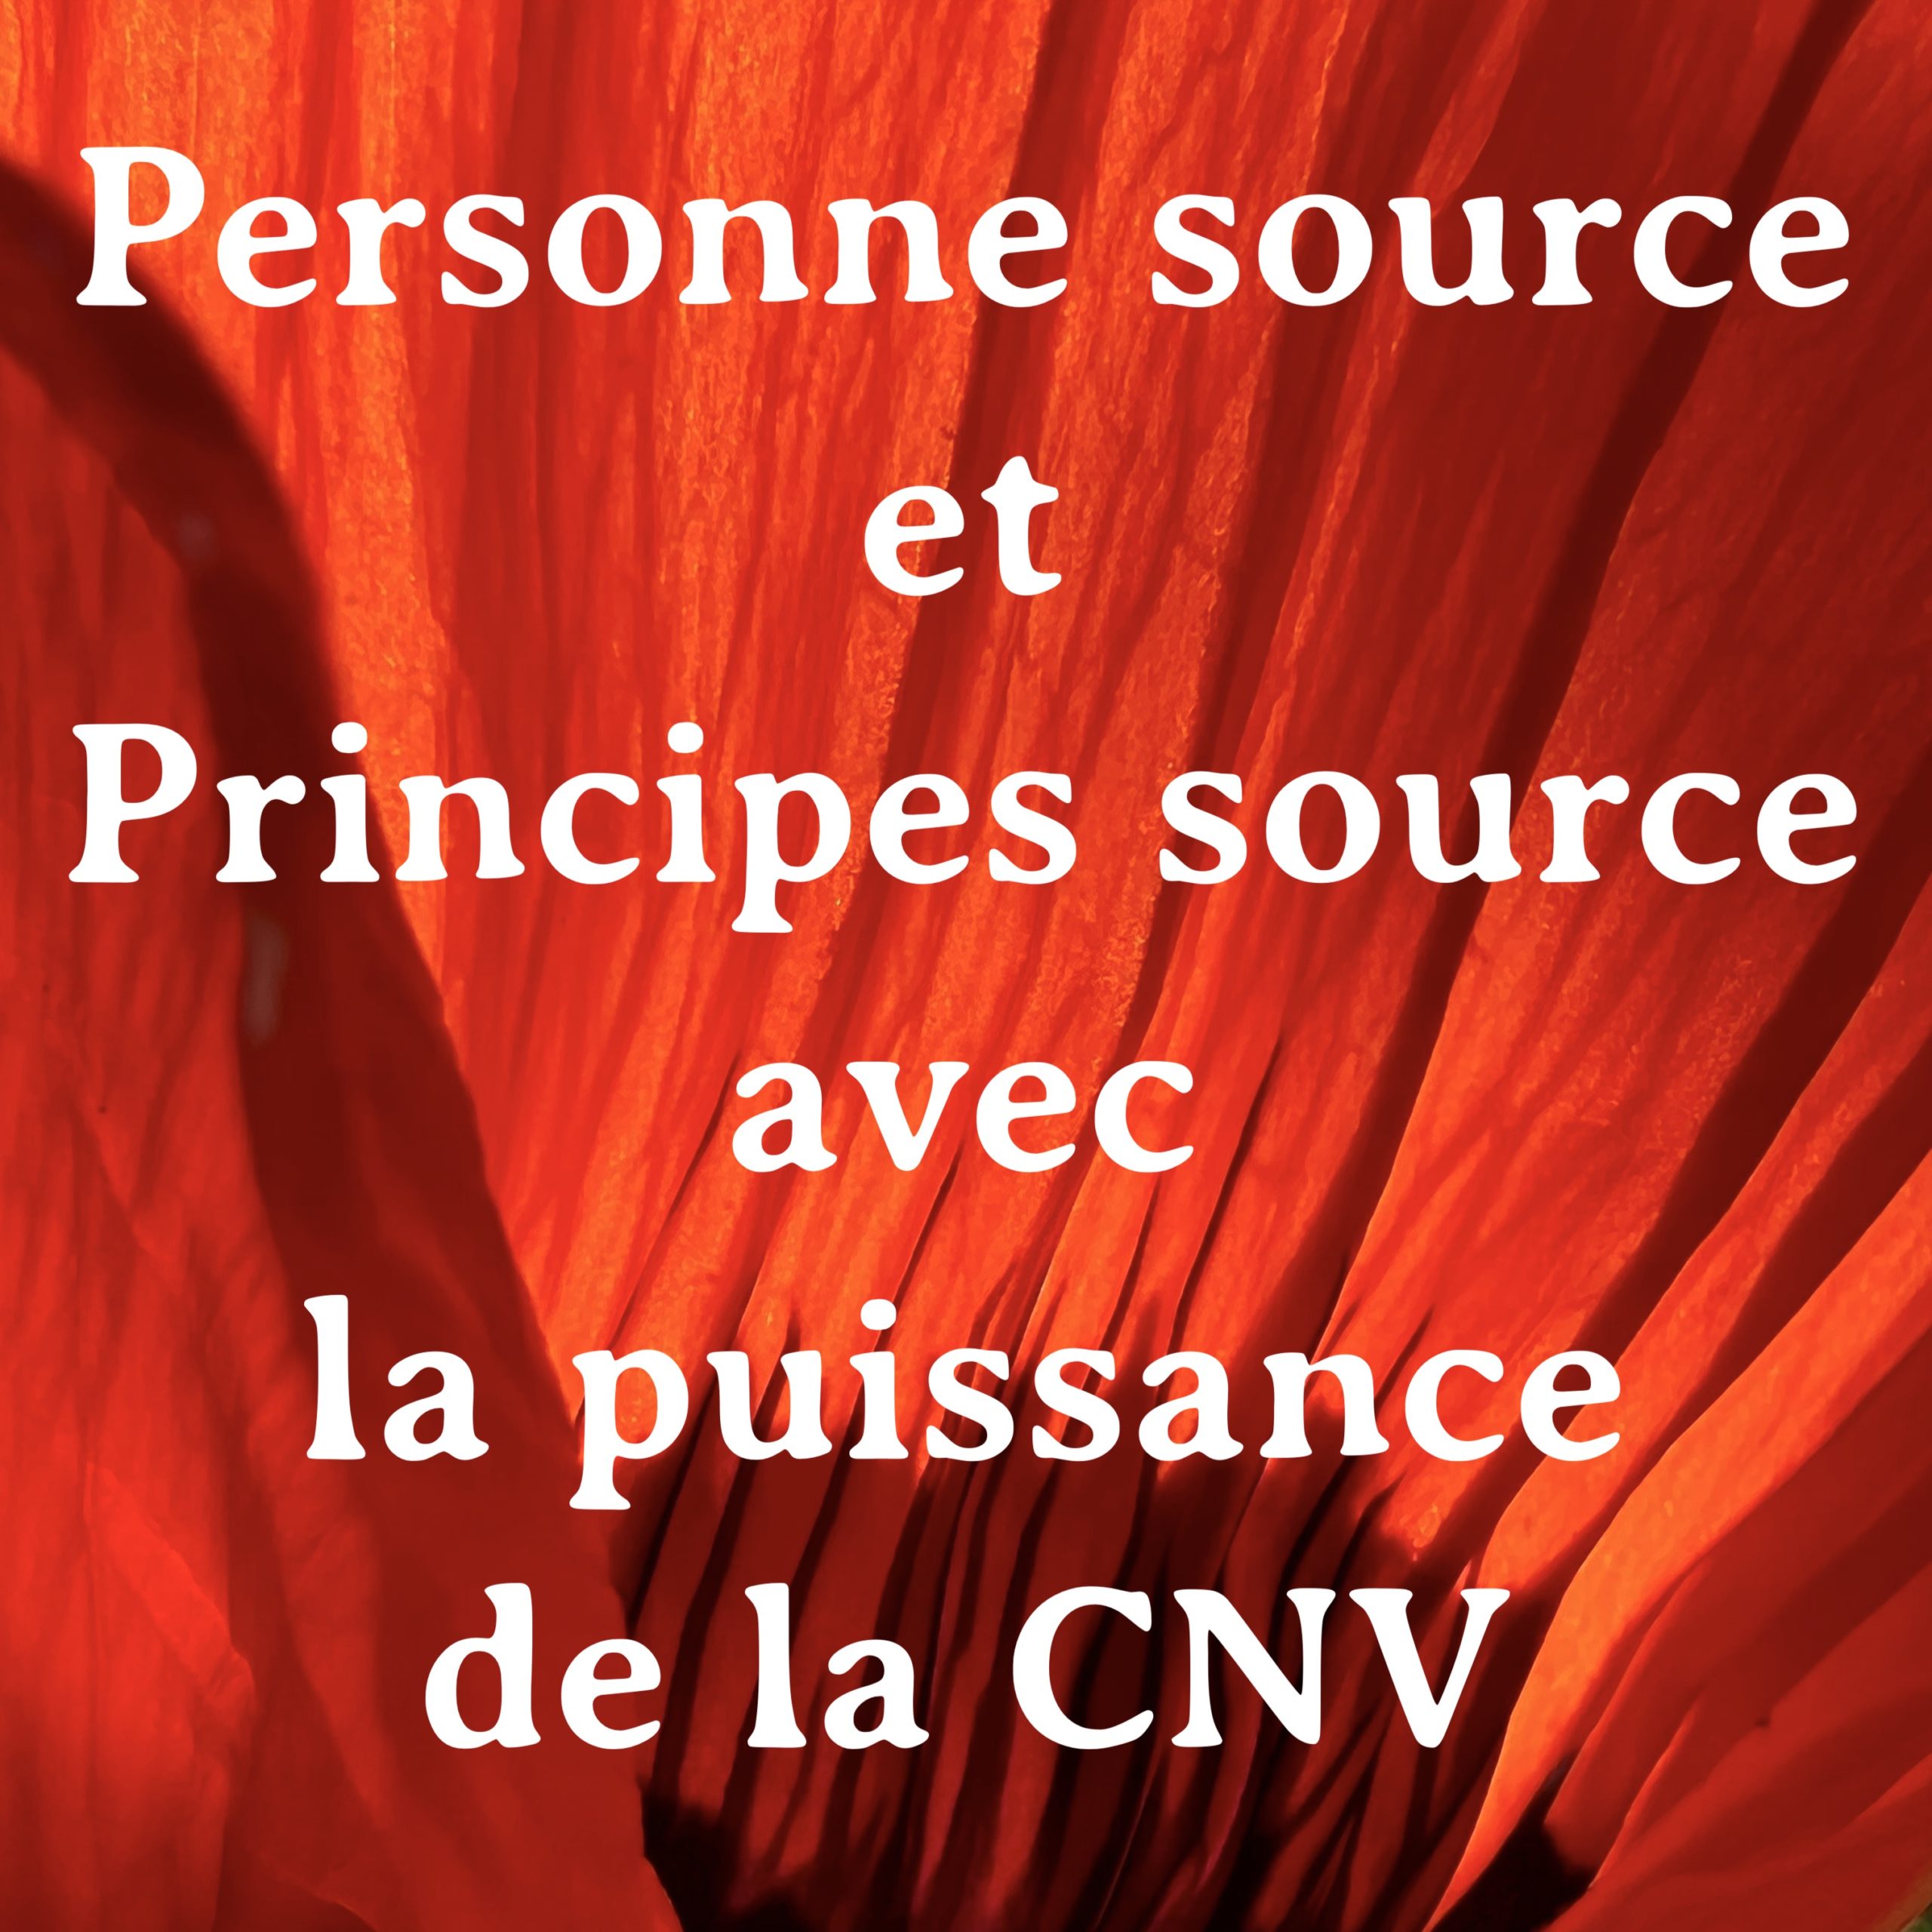 CNV et autres approches | Principes source, Personne source & CNV | Vincent Delfosse